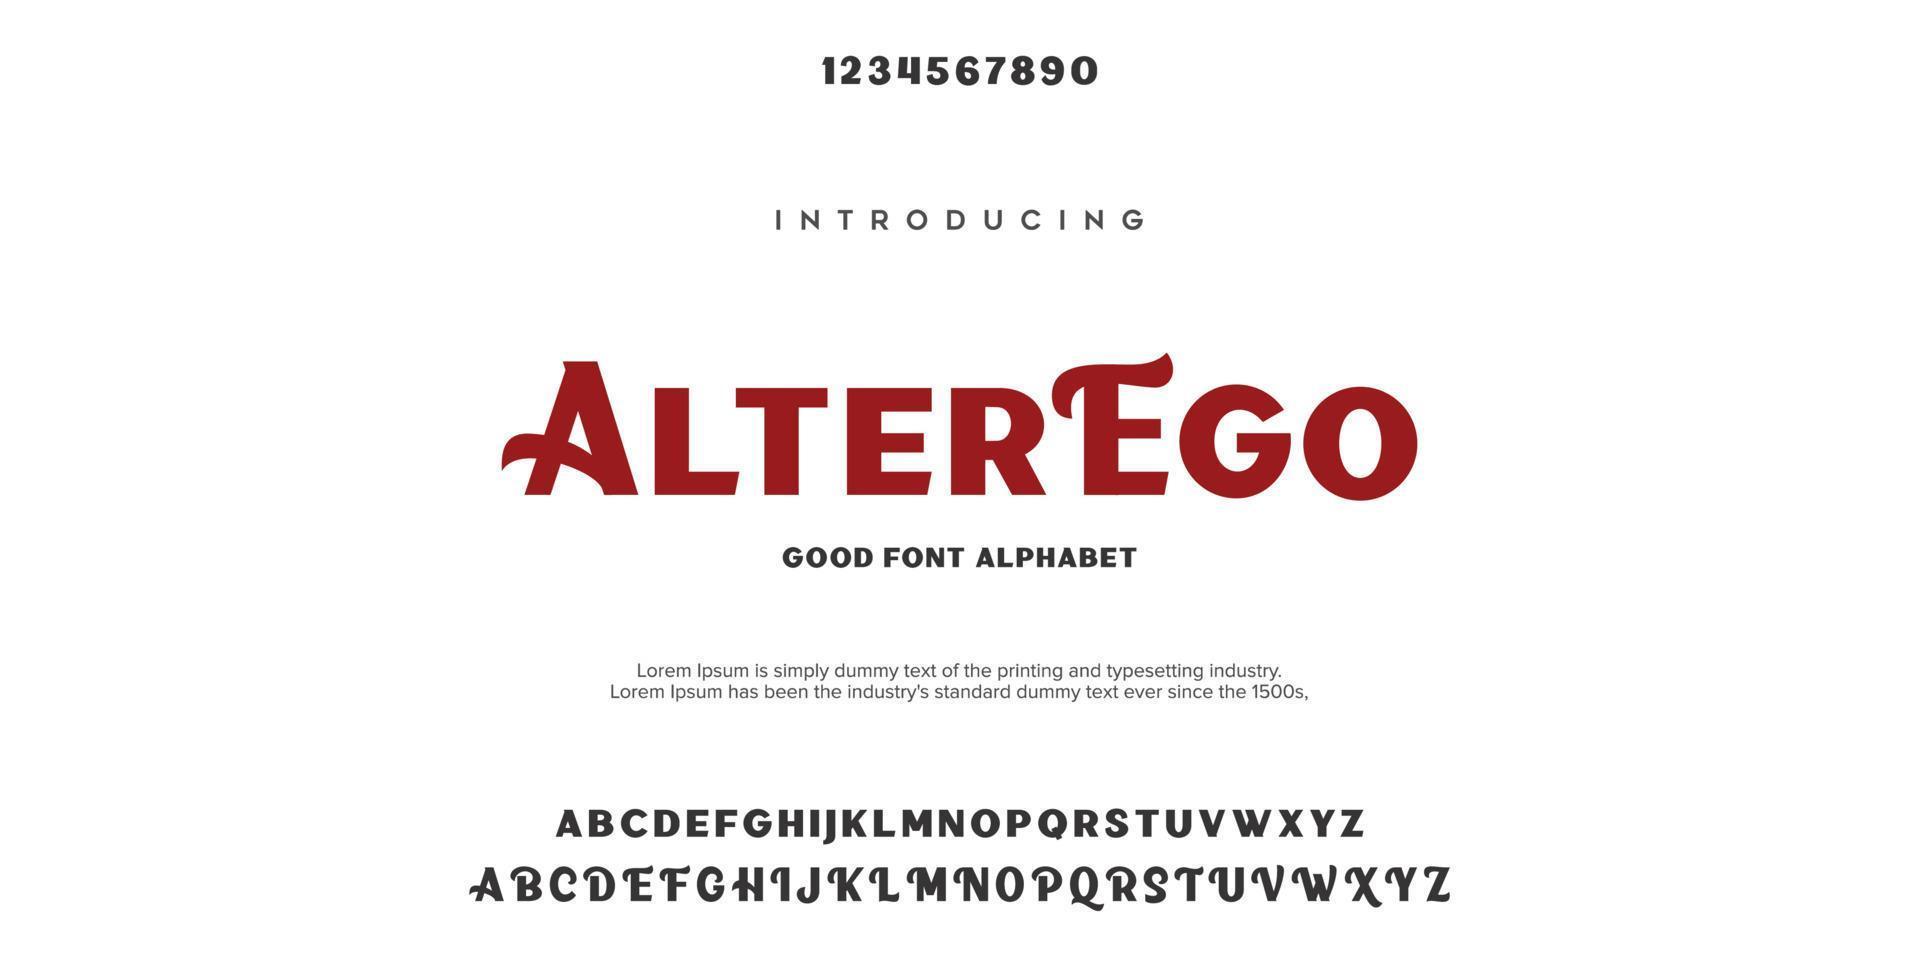 alter ego abstrakt mode teckensnitt alfabetet. minimal modern urban typsnitt för logotyp, varumärke etc. typografi typsnitt versaler gemener och nummer. vektor illustration